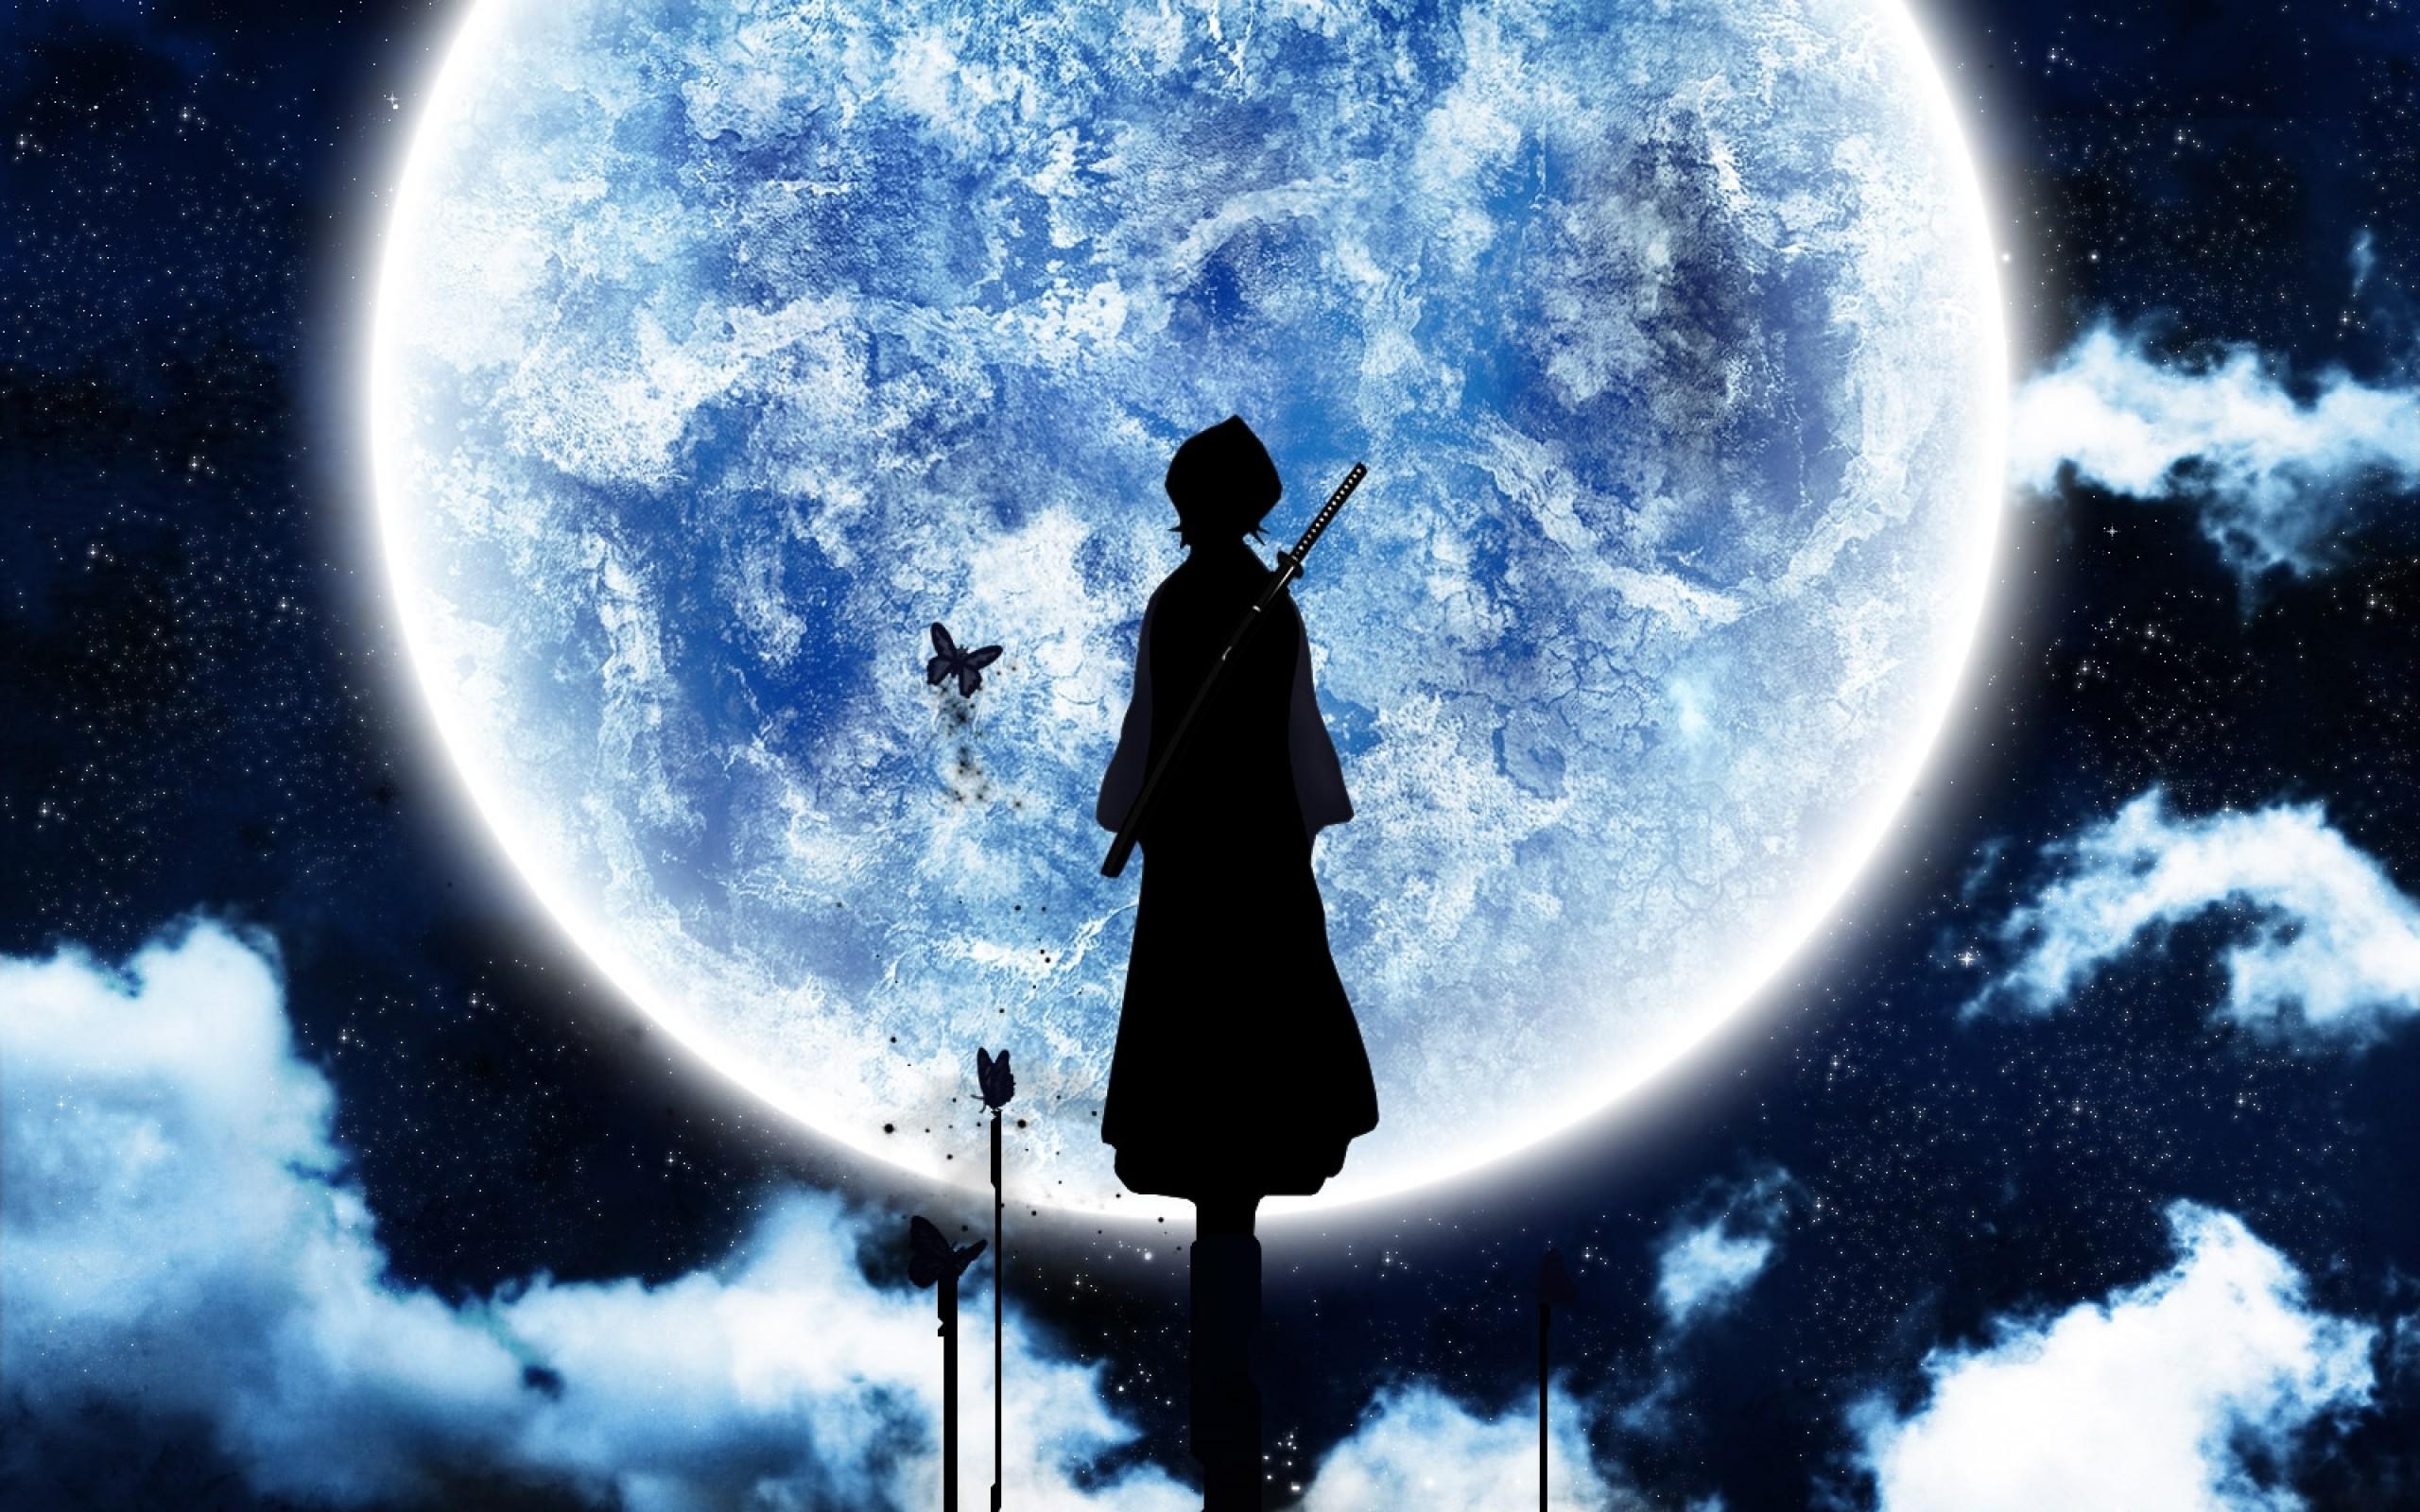 Hình nền đen tối của Anime với hình ảnh ánh trăng rực rỡ, bạn sẽ không thể rời mắt khỏi màn hình khi ngắm nhìn những bức hình như vậy. Hãy sử dụng những hình ảnh đầy tính nghệ thuật này để làm hình nền của thiết bị của bạn.